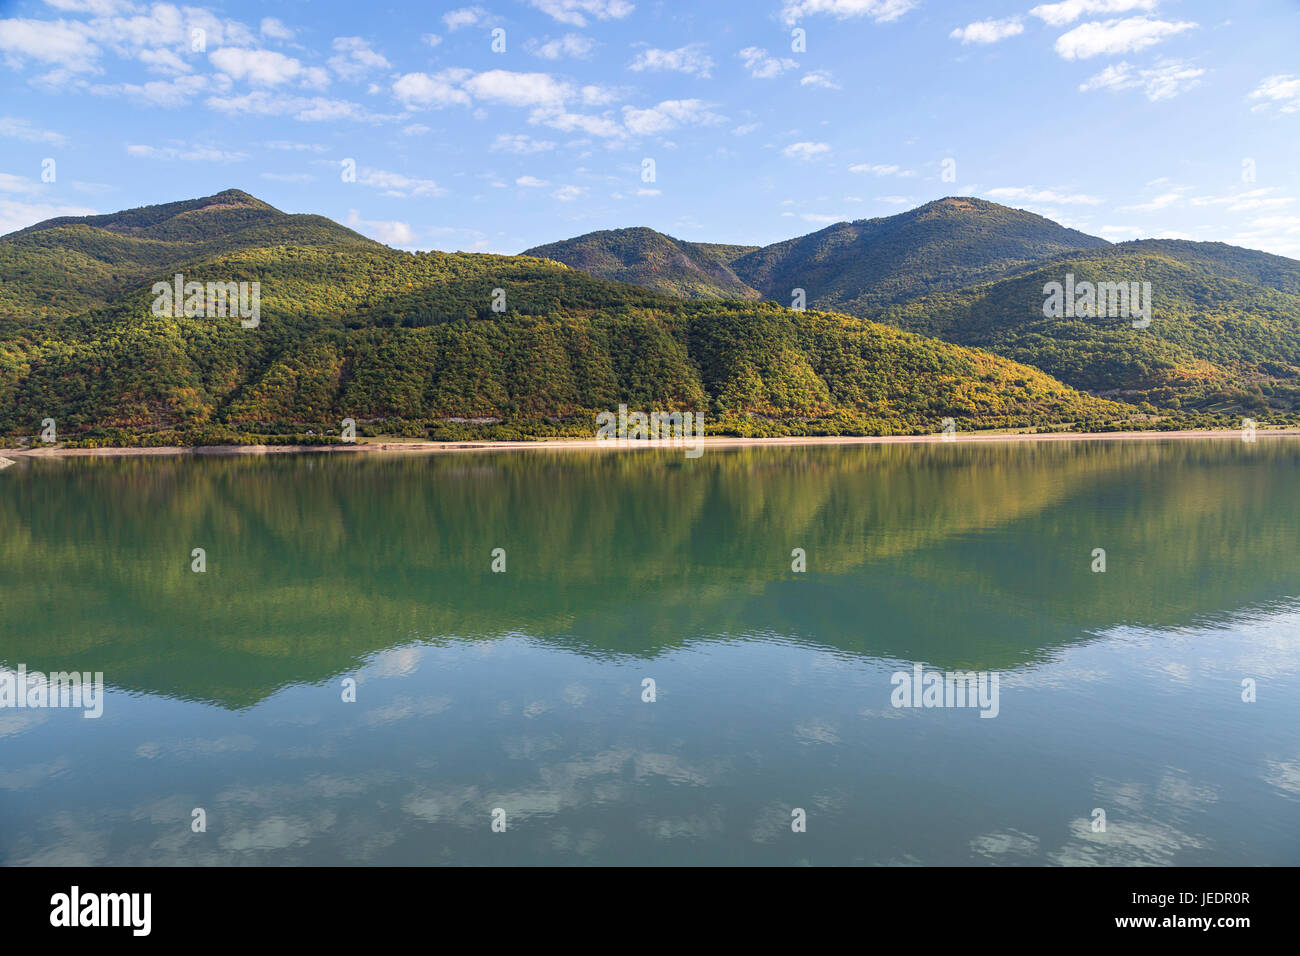 Reflet de la montagne dans l'eau à proximité d'Ananuri, en Géorgie, montagnes du Caucase. Banque D'Images